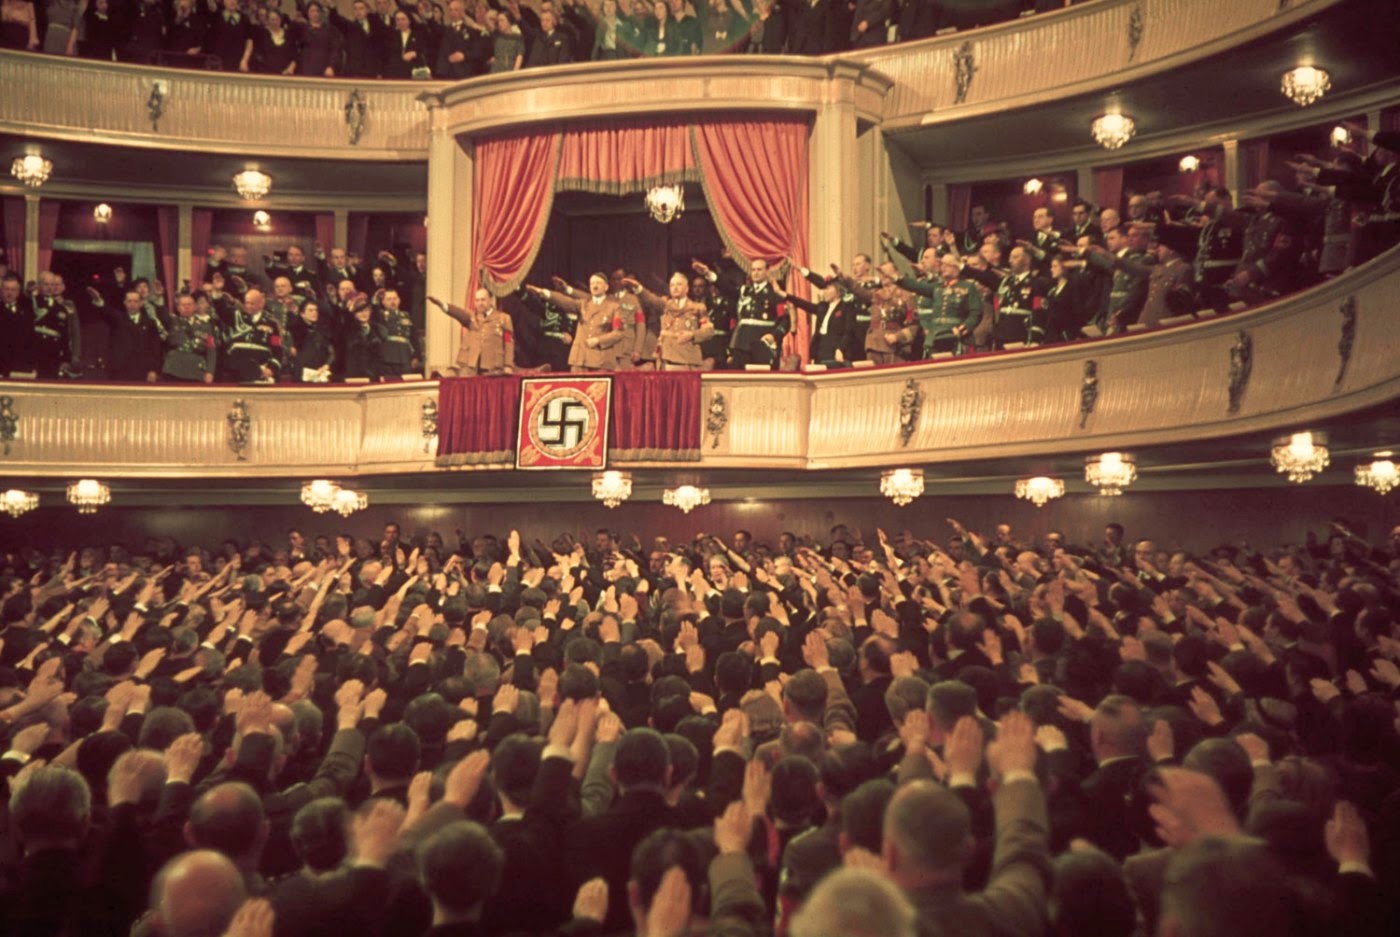 纽伦堡纳粹大会图片